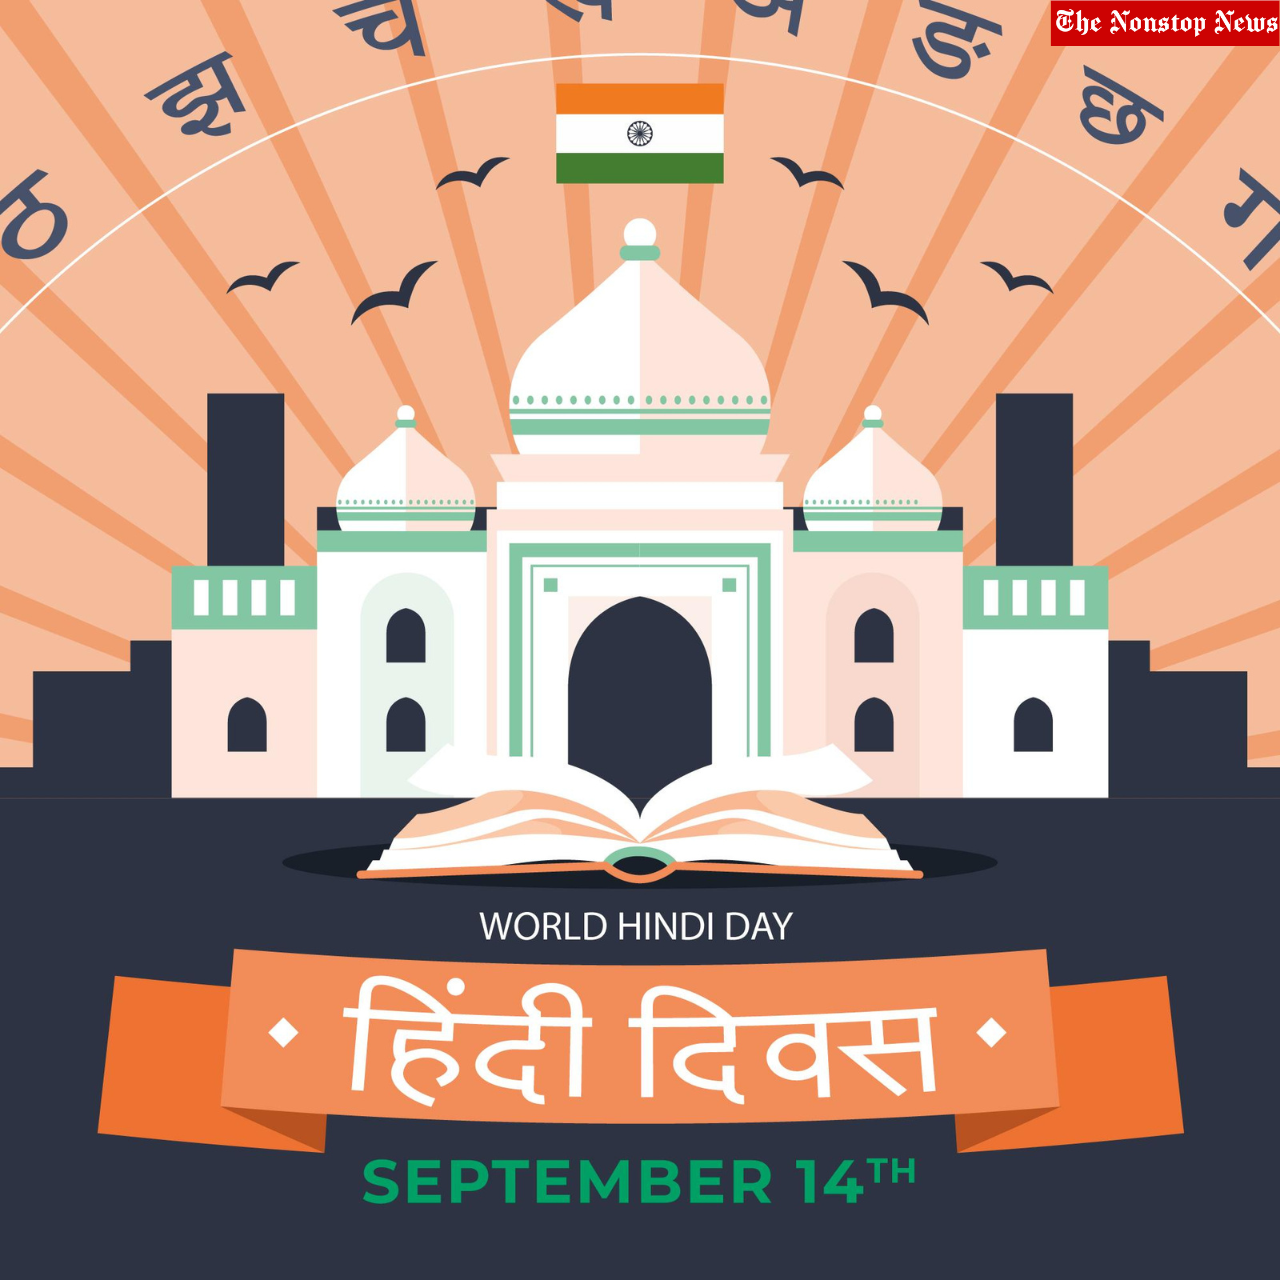 Hindi Diwas 2022: Hindi Quotes, Images, Messages, Greetings, Wishes, Shayari, To Share on 'Hindi Day'